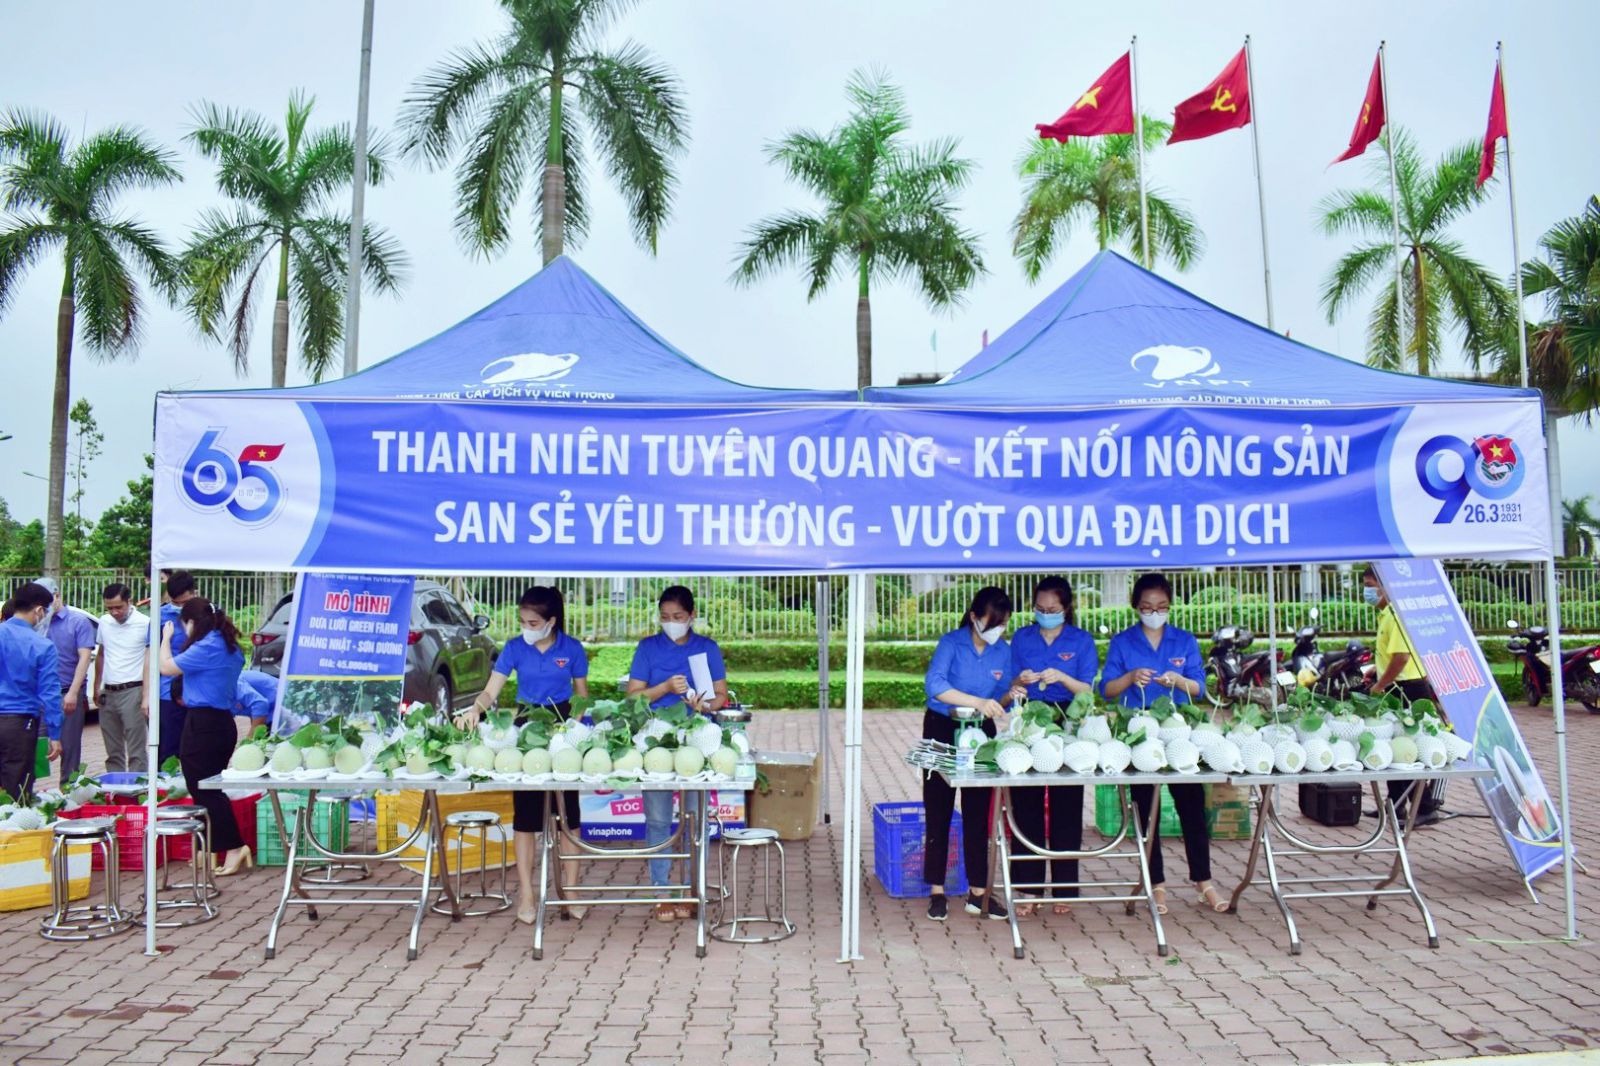 Điểm tiêu thụ nông sản của Tuổi trẻ Tuyên Quang với thông điệp “Thanh niên Tuyên Quang - kết nối nông sản - san sẻ yêu thương - vượt qua đại dịch”